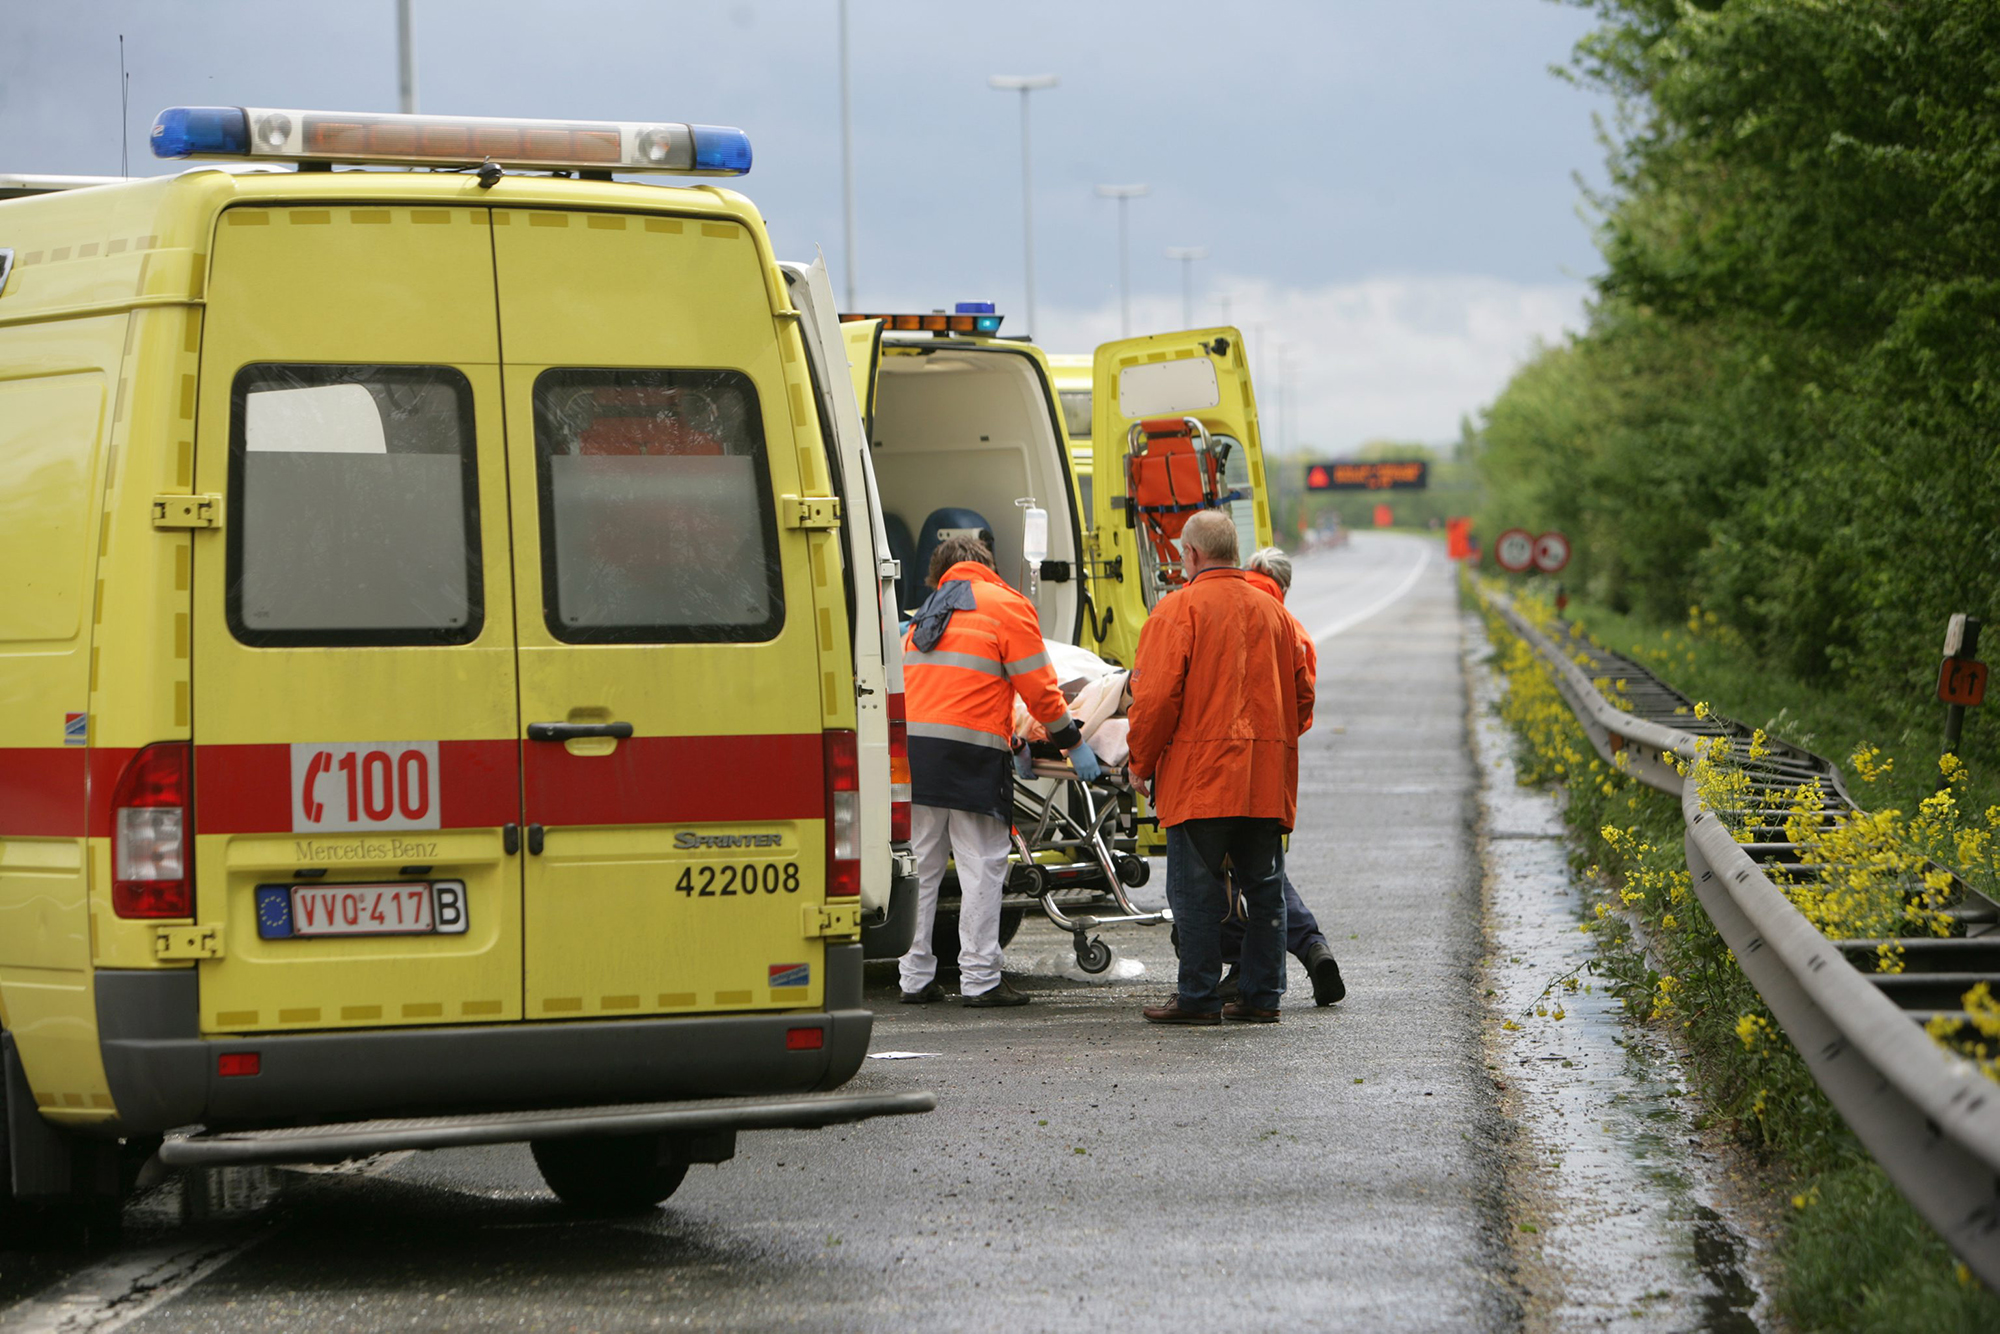 Rettungswagen (Bild: Lieven Van Assche/Belga)